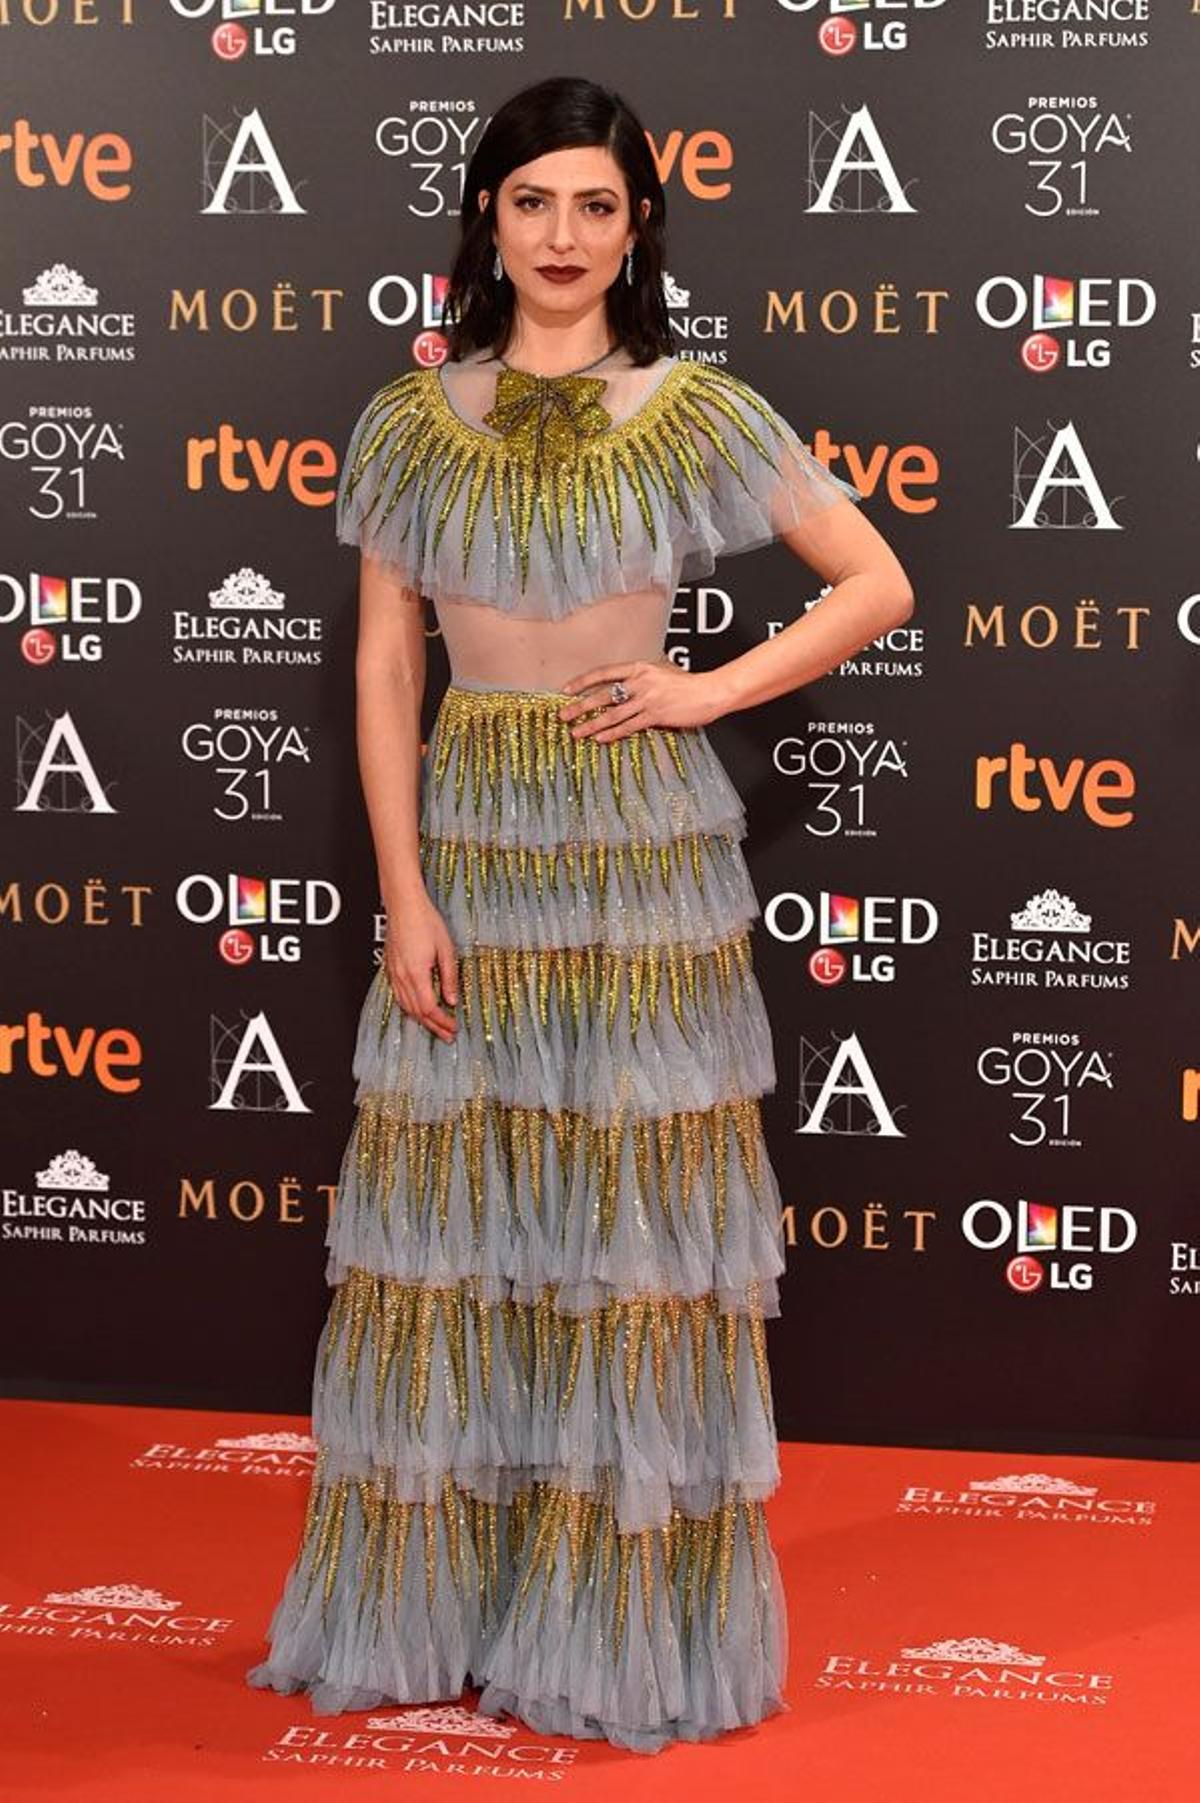 Premios Goya 2017, las mejor vestidas: Bárbara Lennie